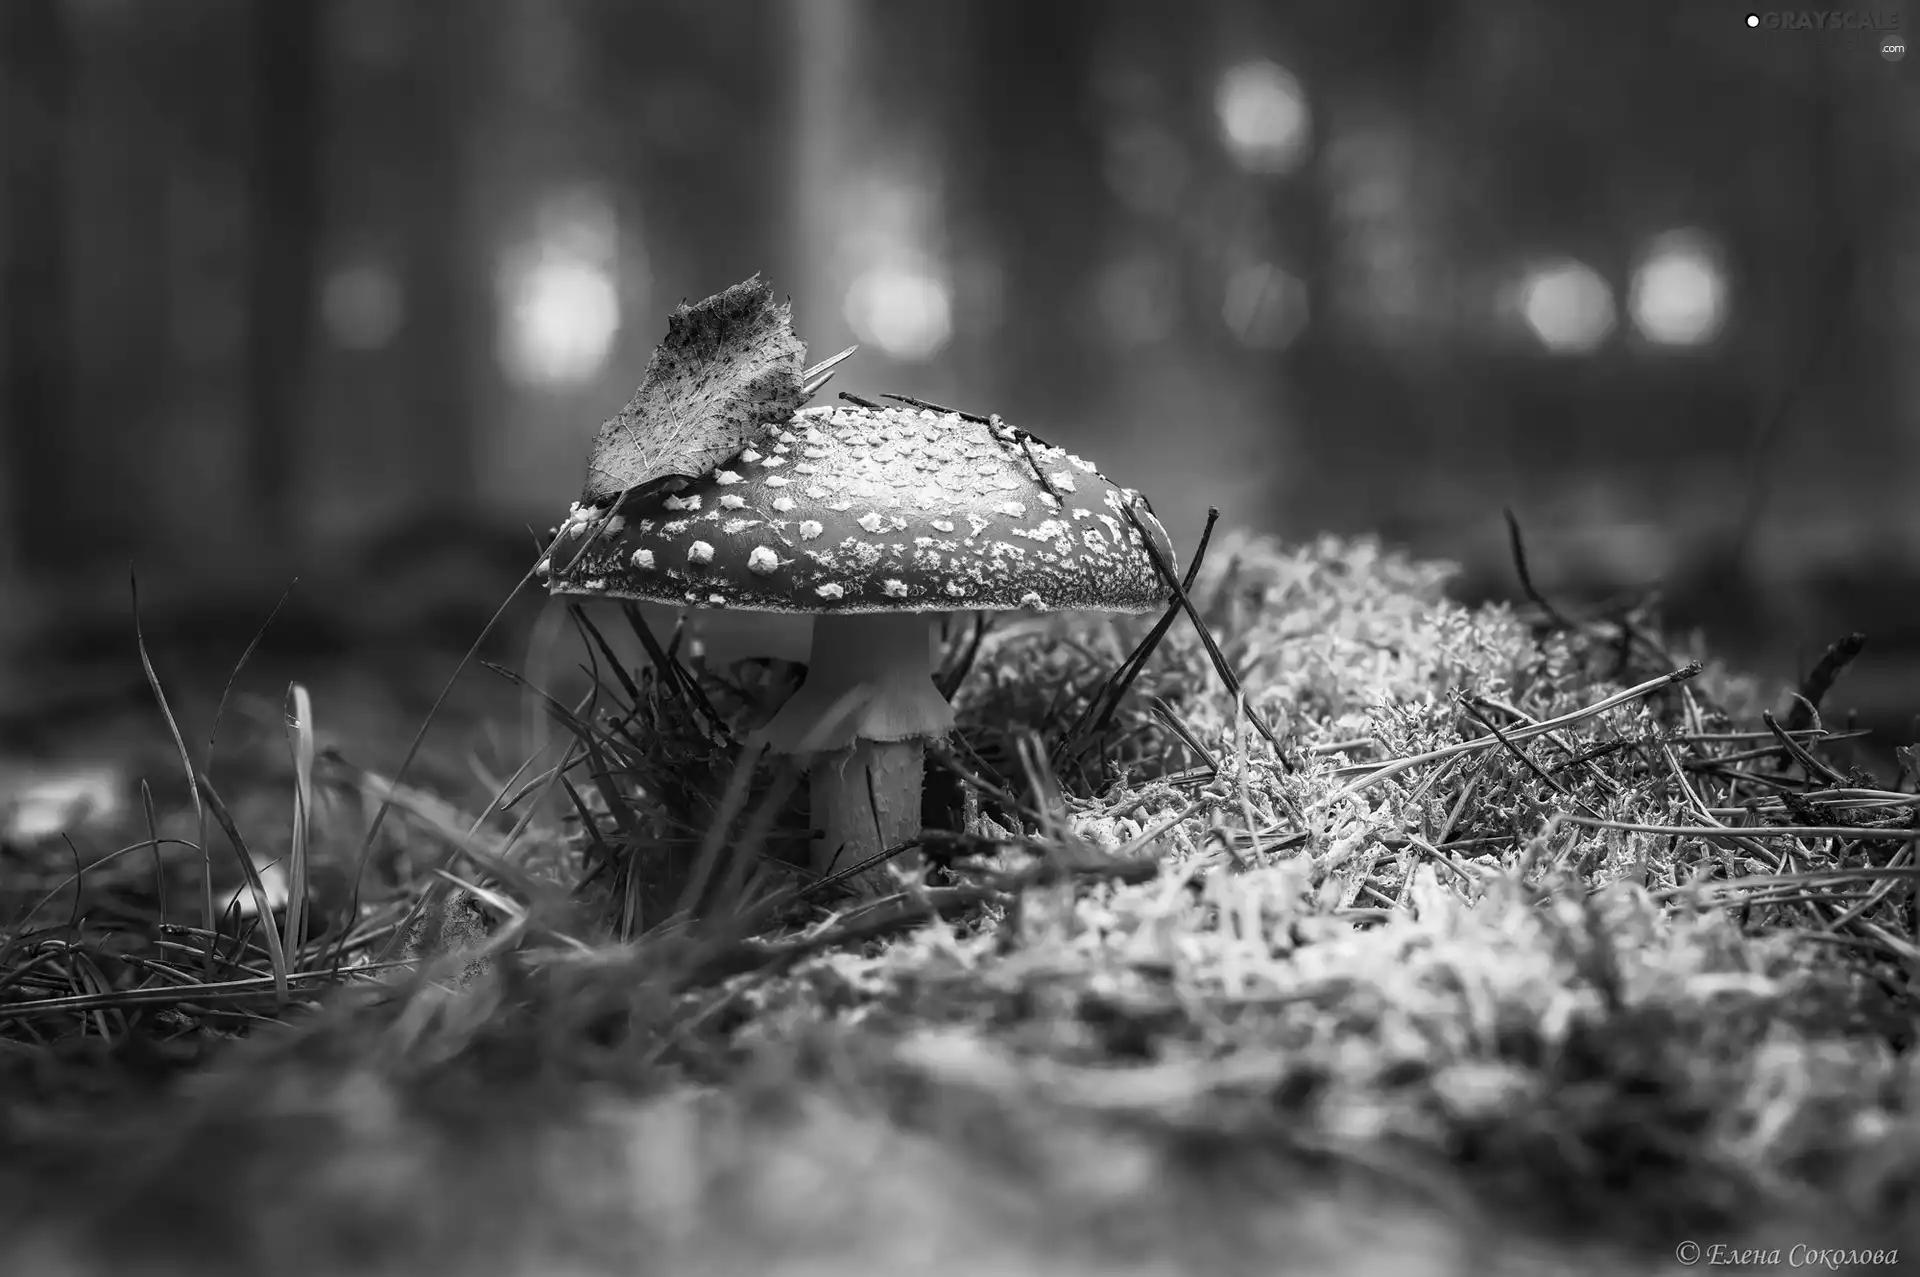 Mushrooms, leaf, litter, toadstool